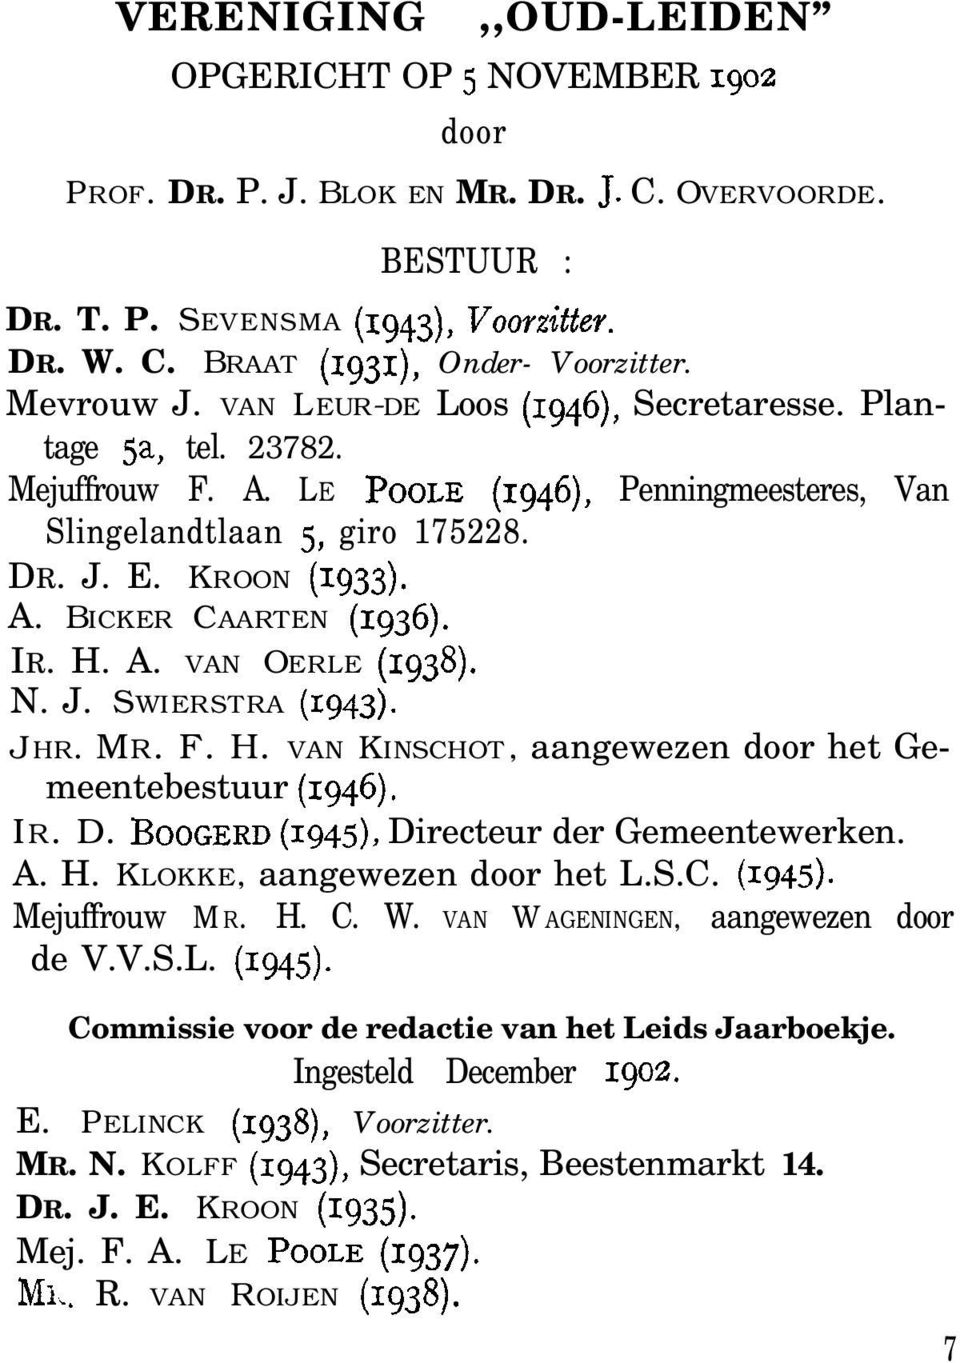 IR. H. A. VAN OERLE (1938). N. J. SWIERSTRA (1943). JHR. MR. F. H. VAN KINSCHOT, aangewezen door het Gemeentebestuur (1946). IR. D. BOOGERD (Igqz), Directeur der Gemeentewerken. A. H. KLOKKE, aangewezen door het L.